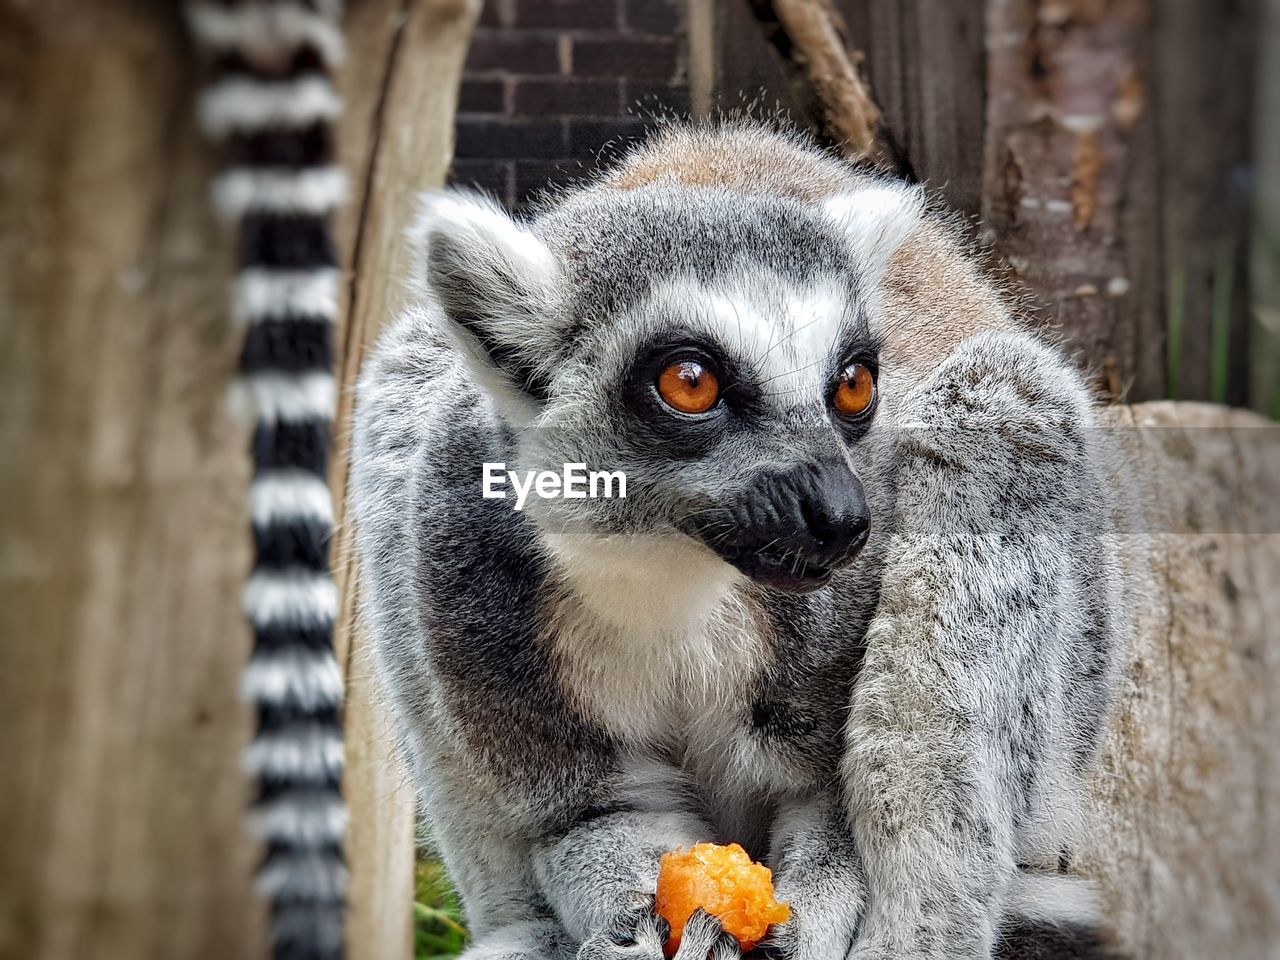 Close-up portrait of a lemur